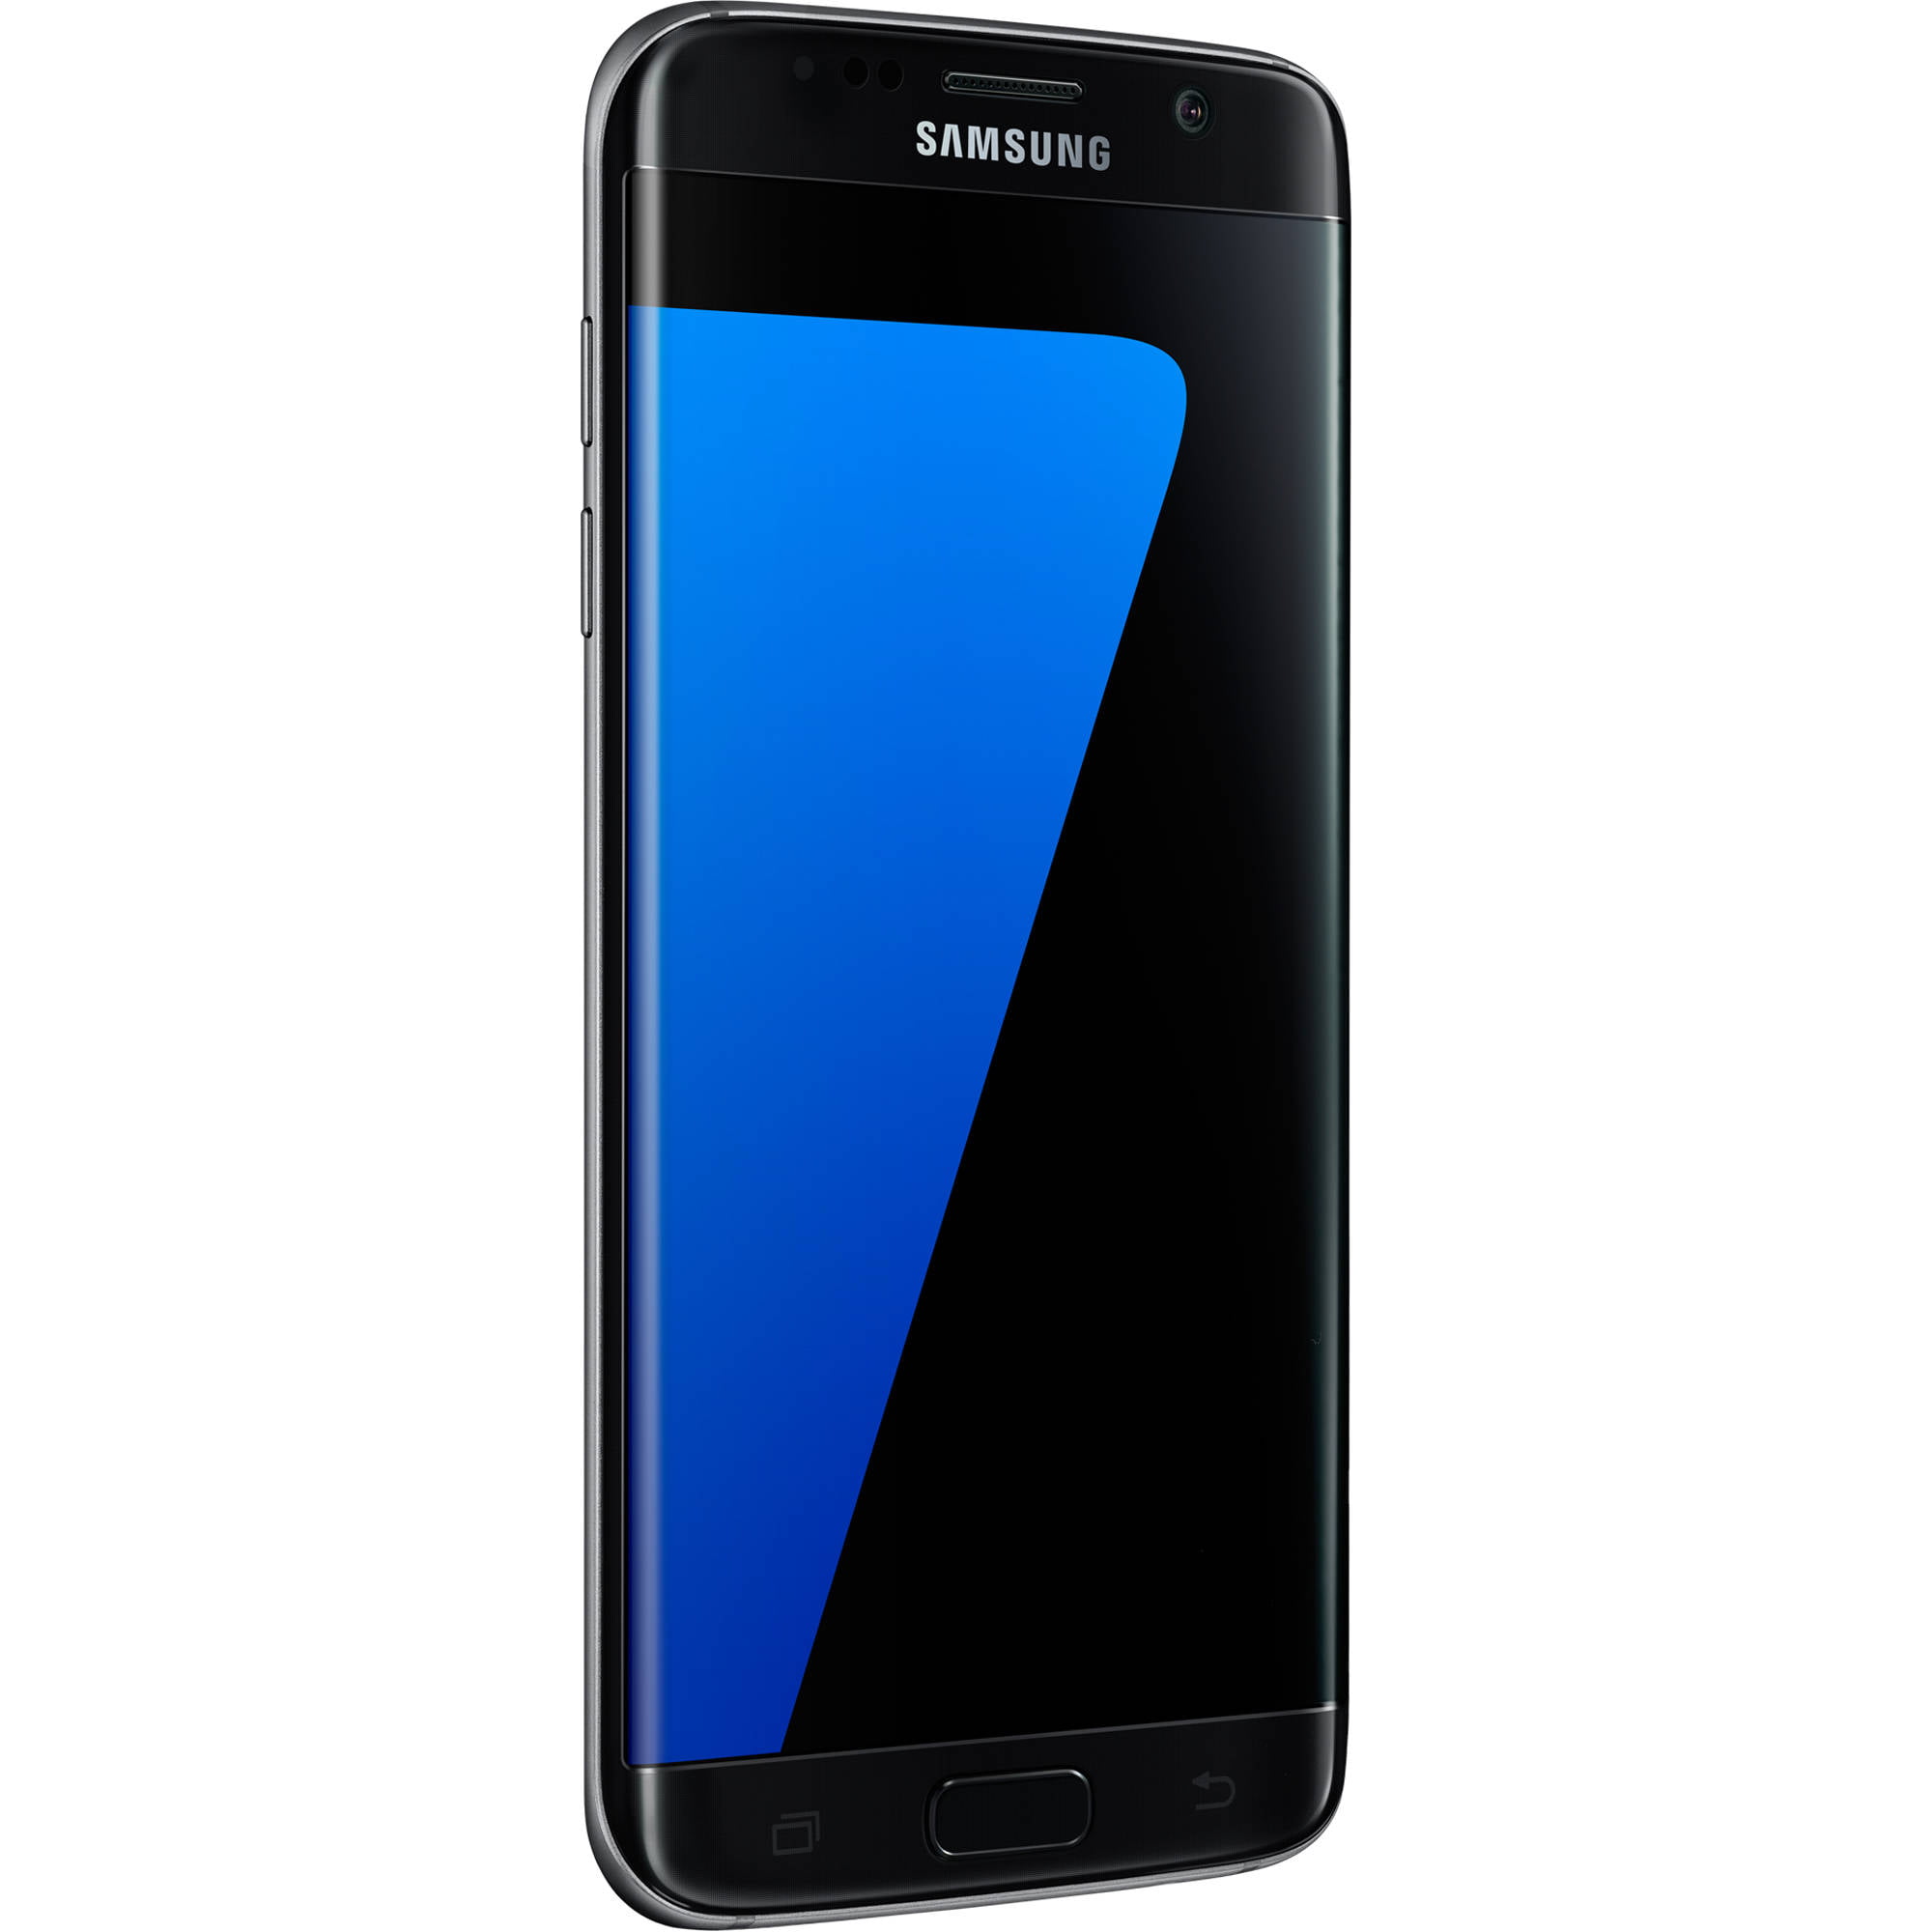 Verwarren Word gek lijst Samsung Galaxy S7 Edge 32GB Unlocked Smartphone, Black - Walmart.com